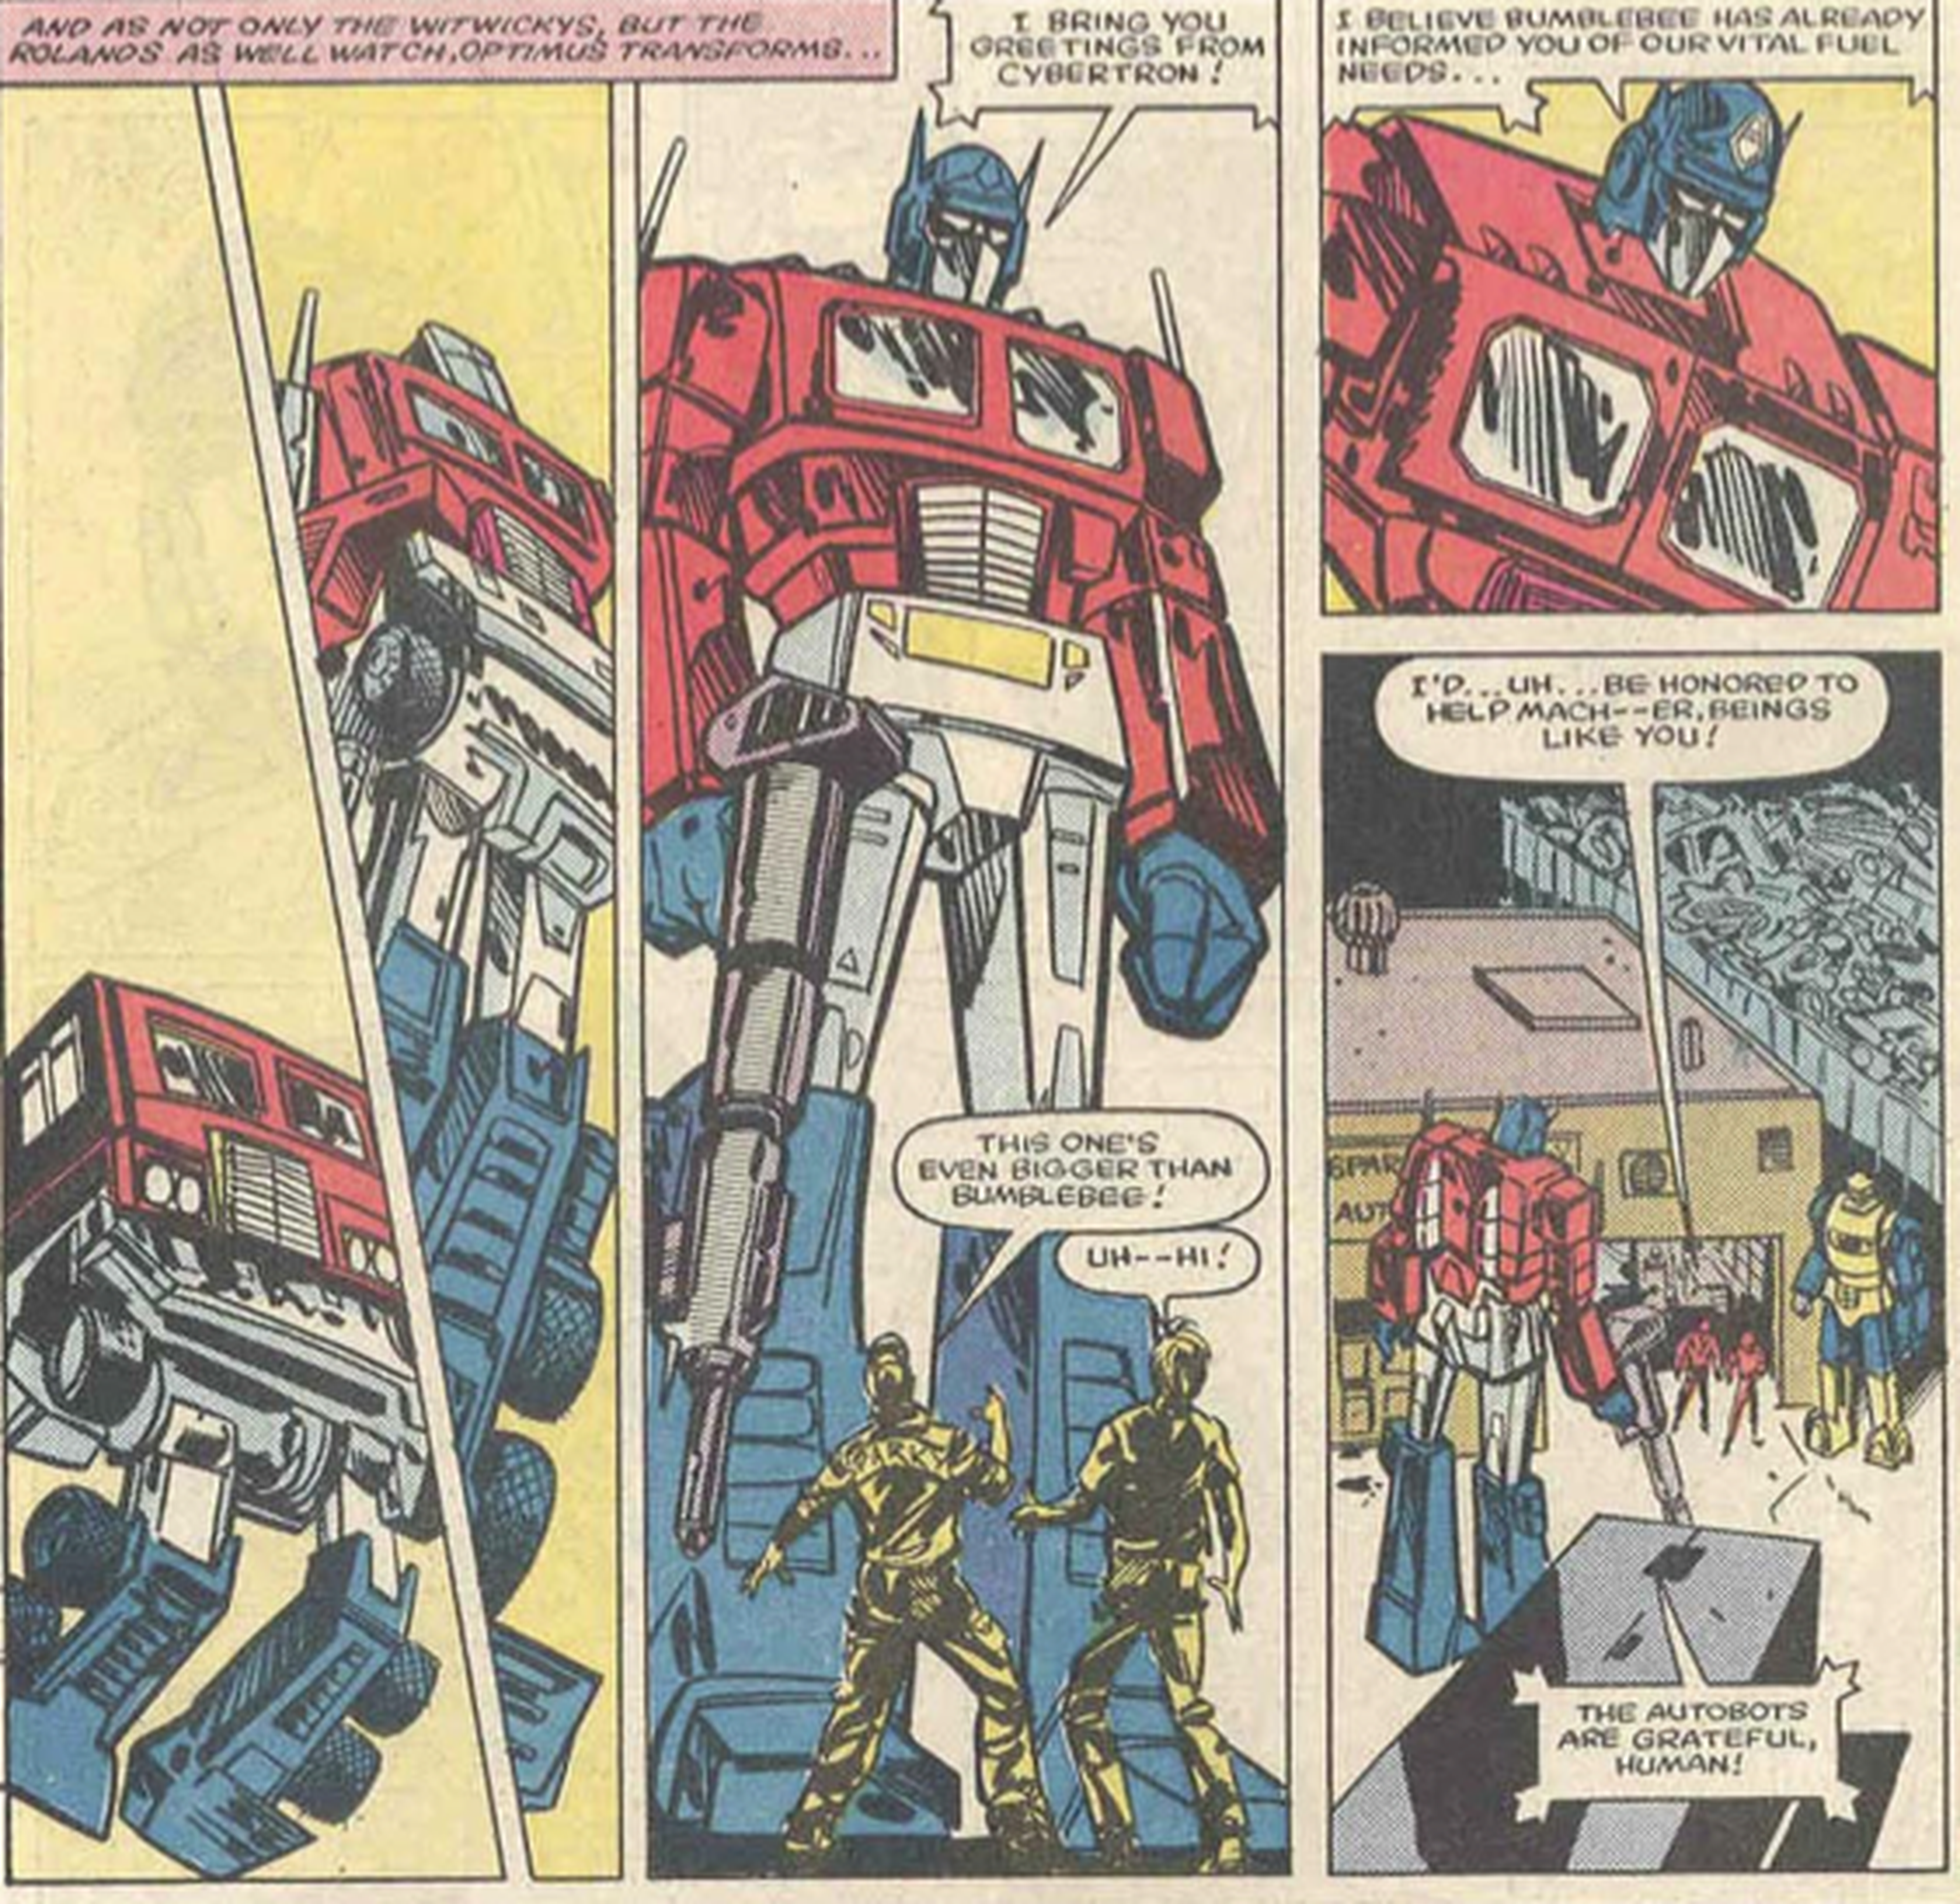 El origen de los Transformers